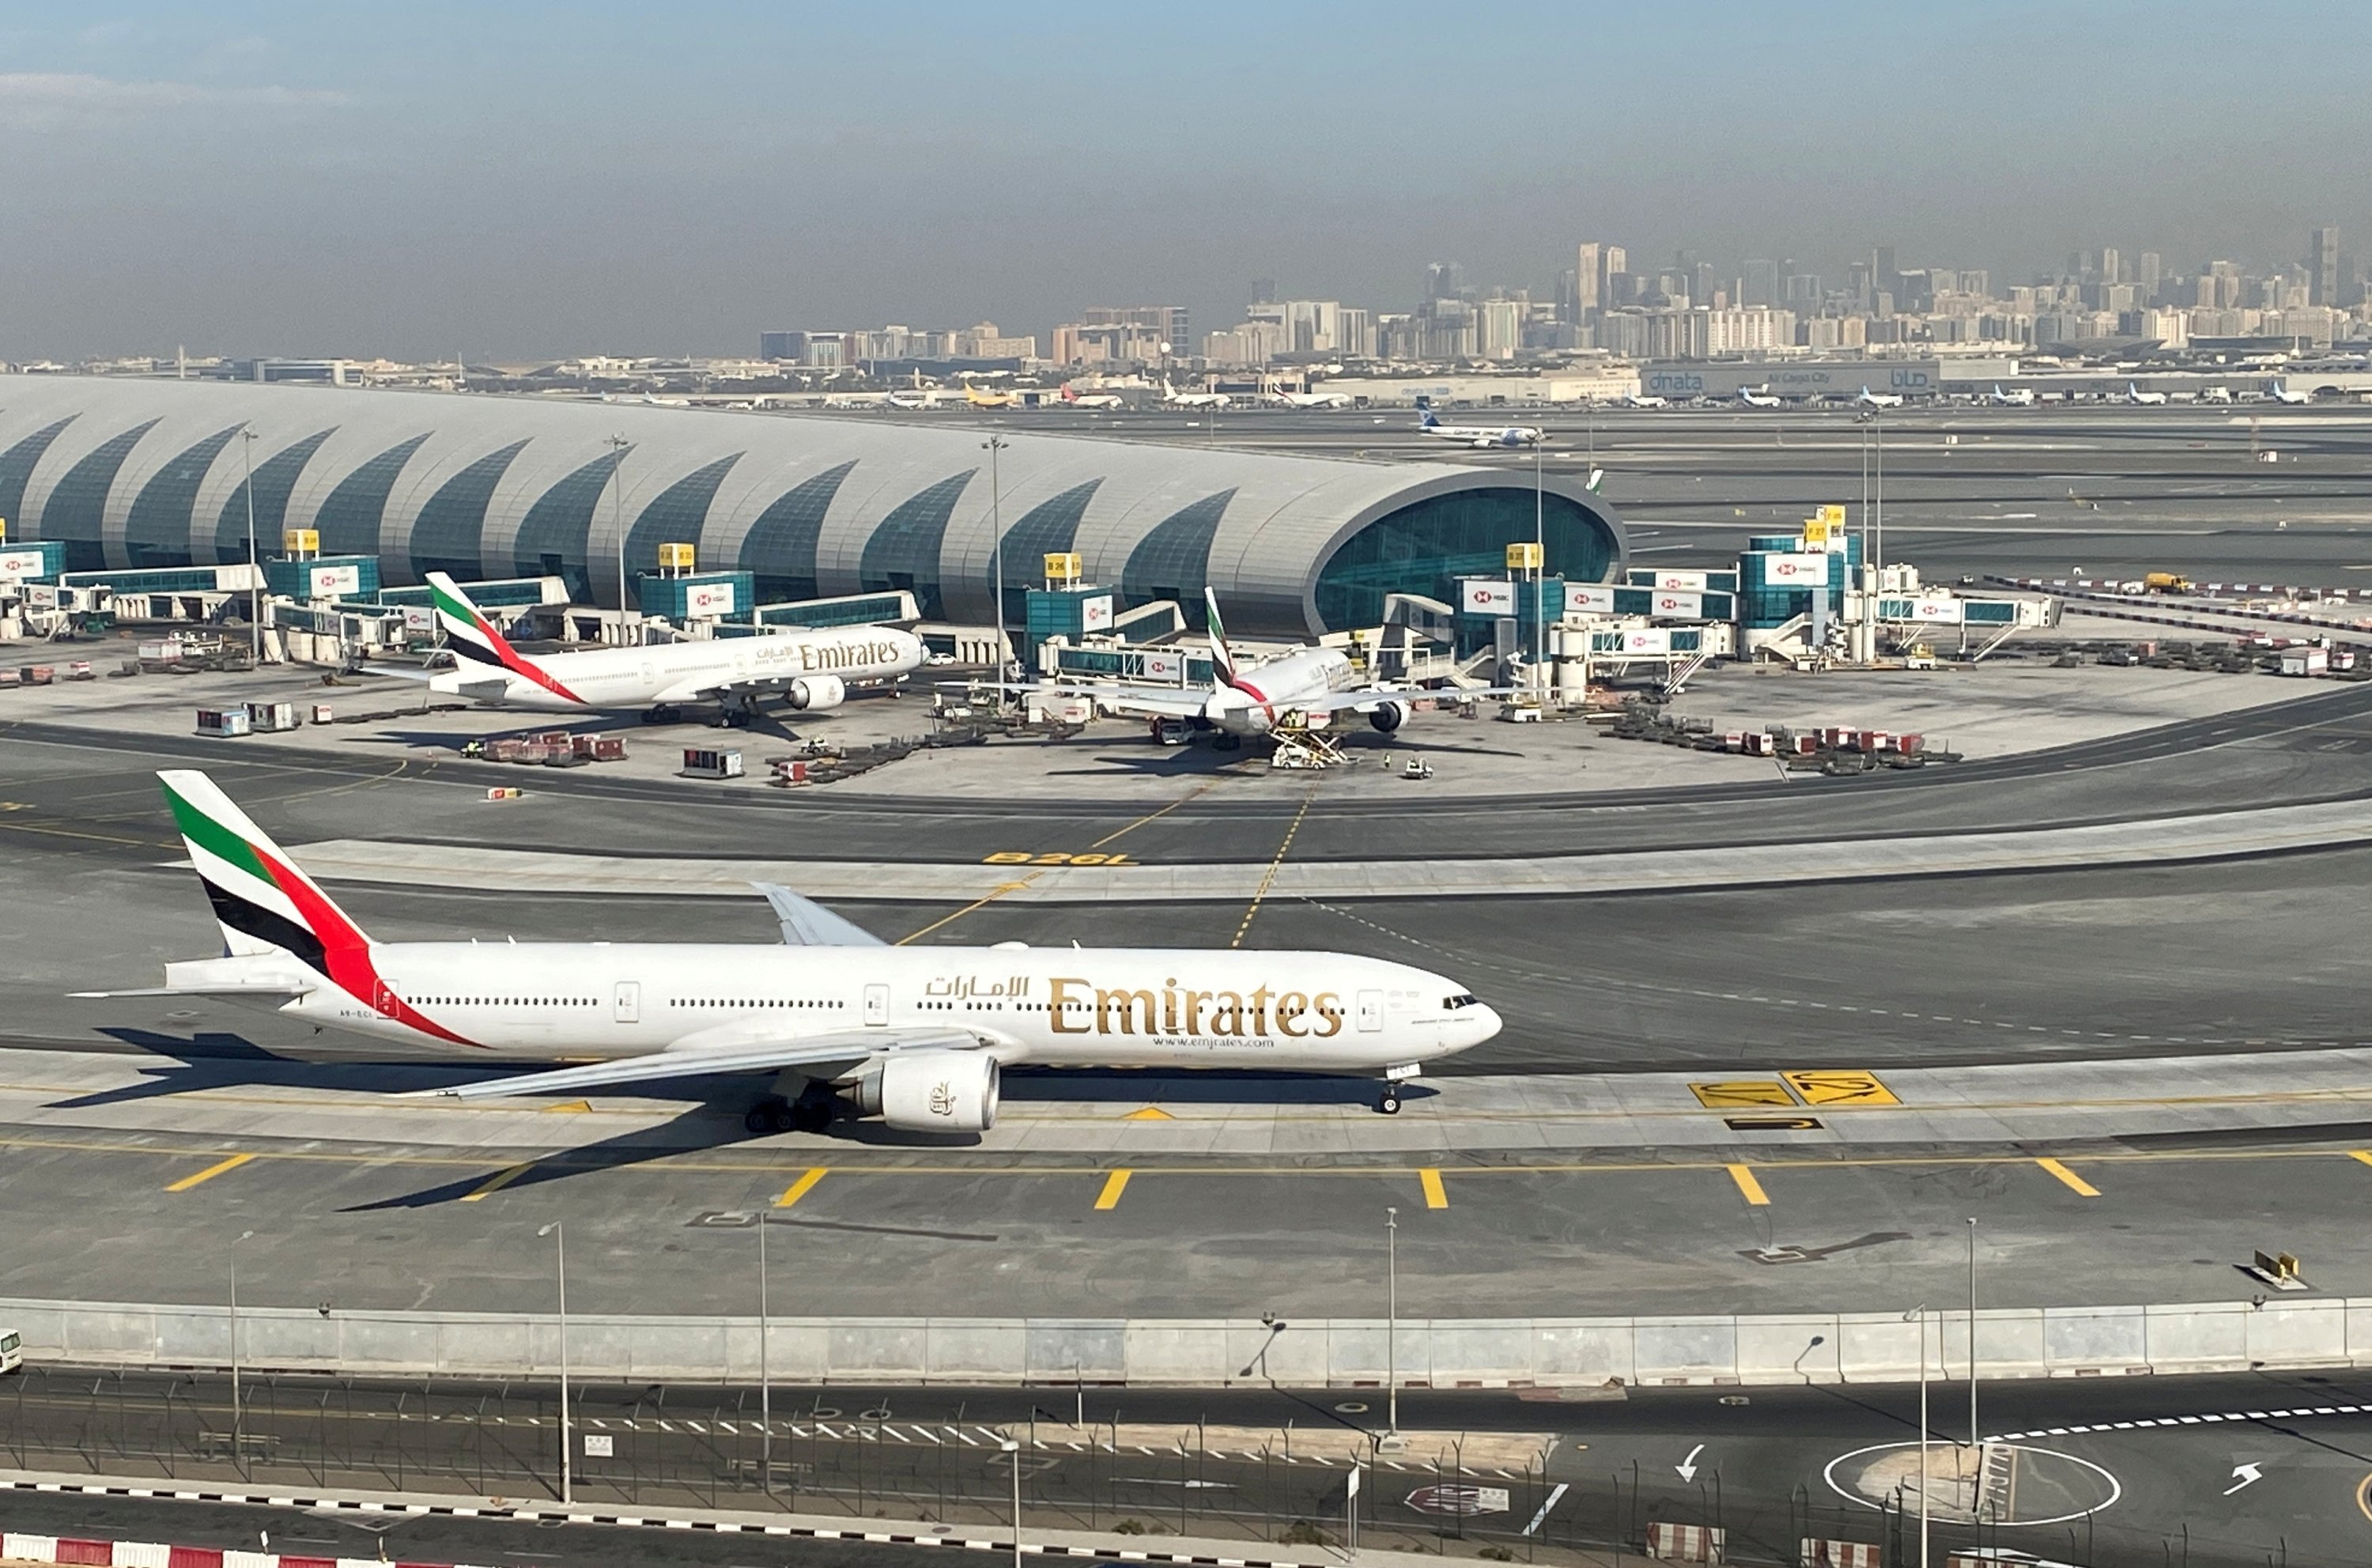 Emirates uçuşlarını güçlendiriyor ve hizmetlerini ağında genişletiyor